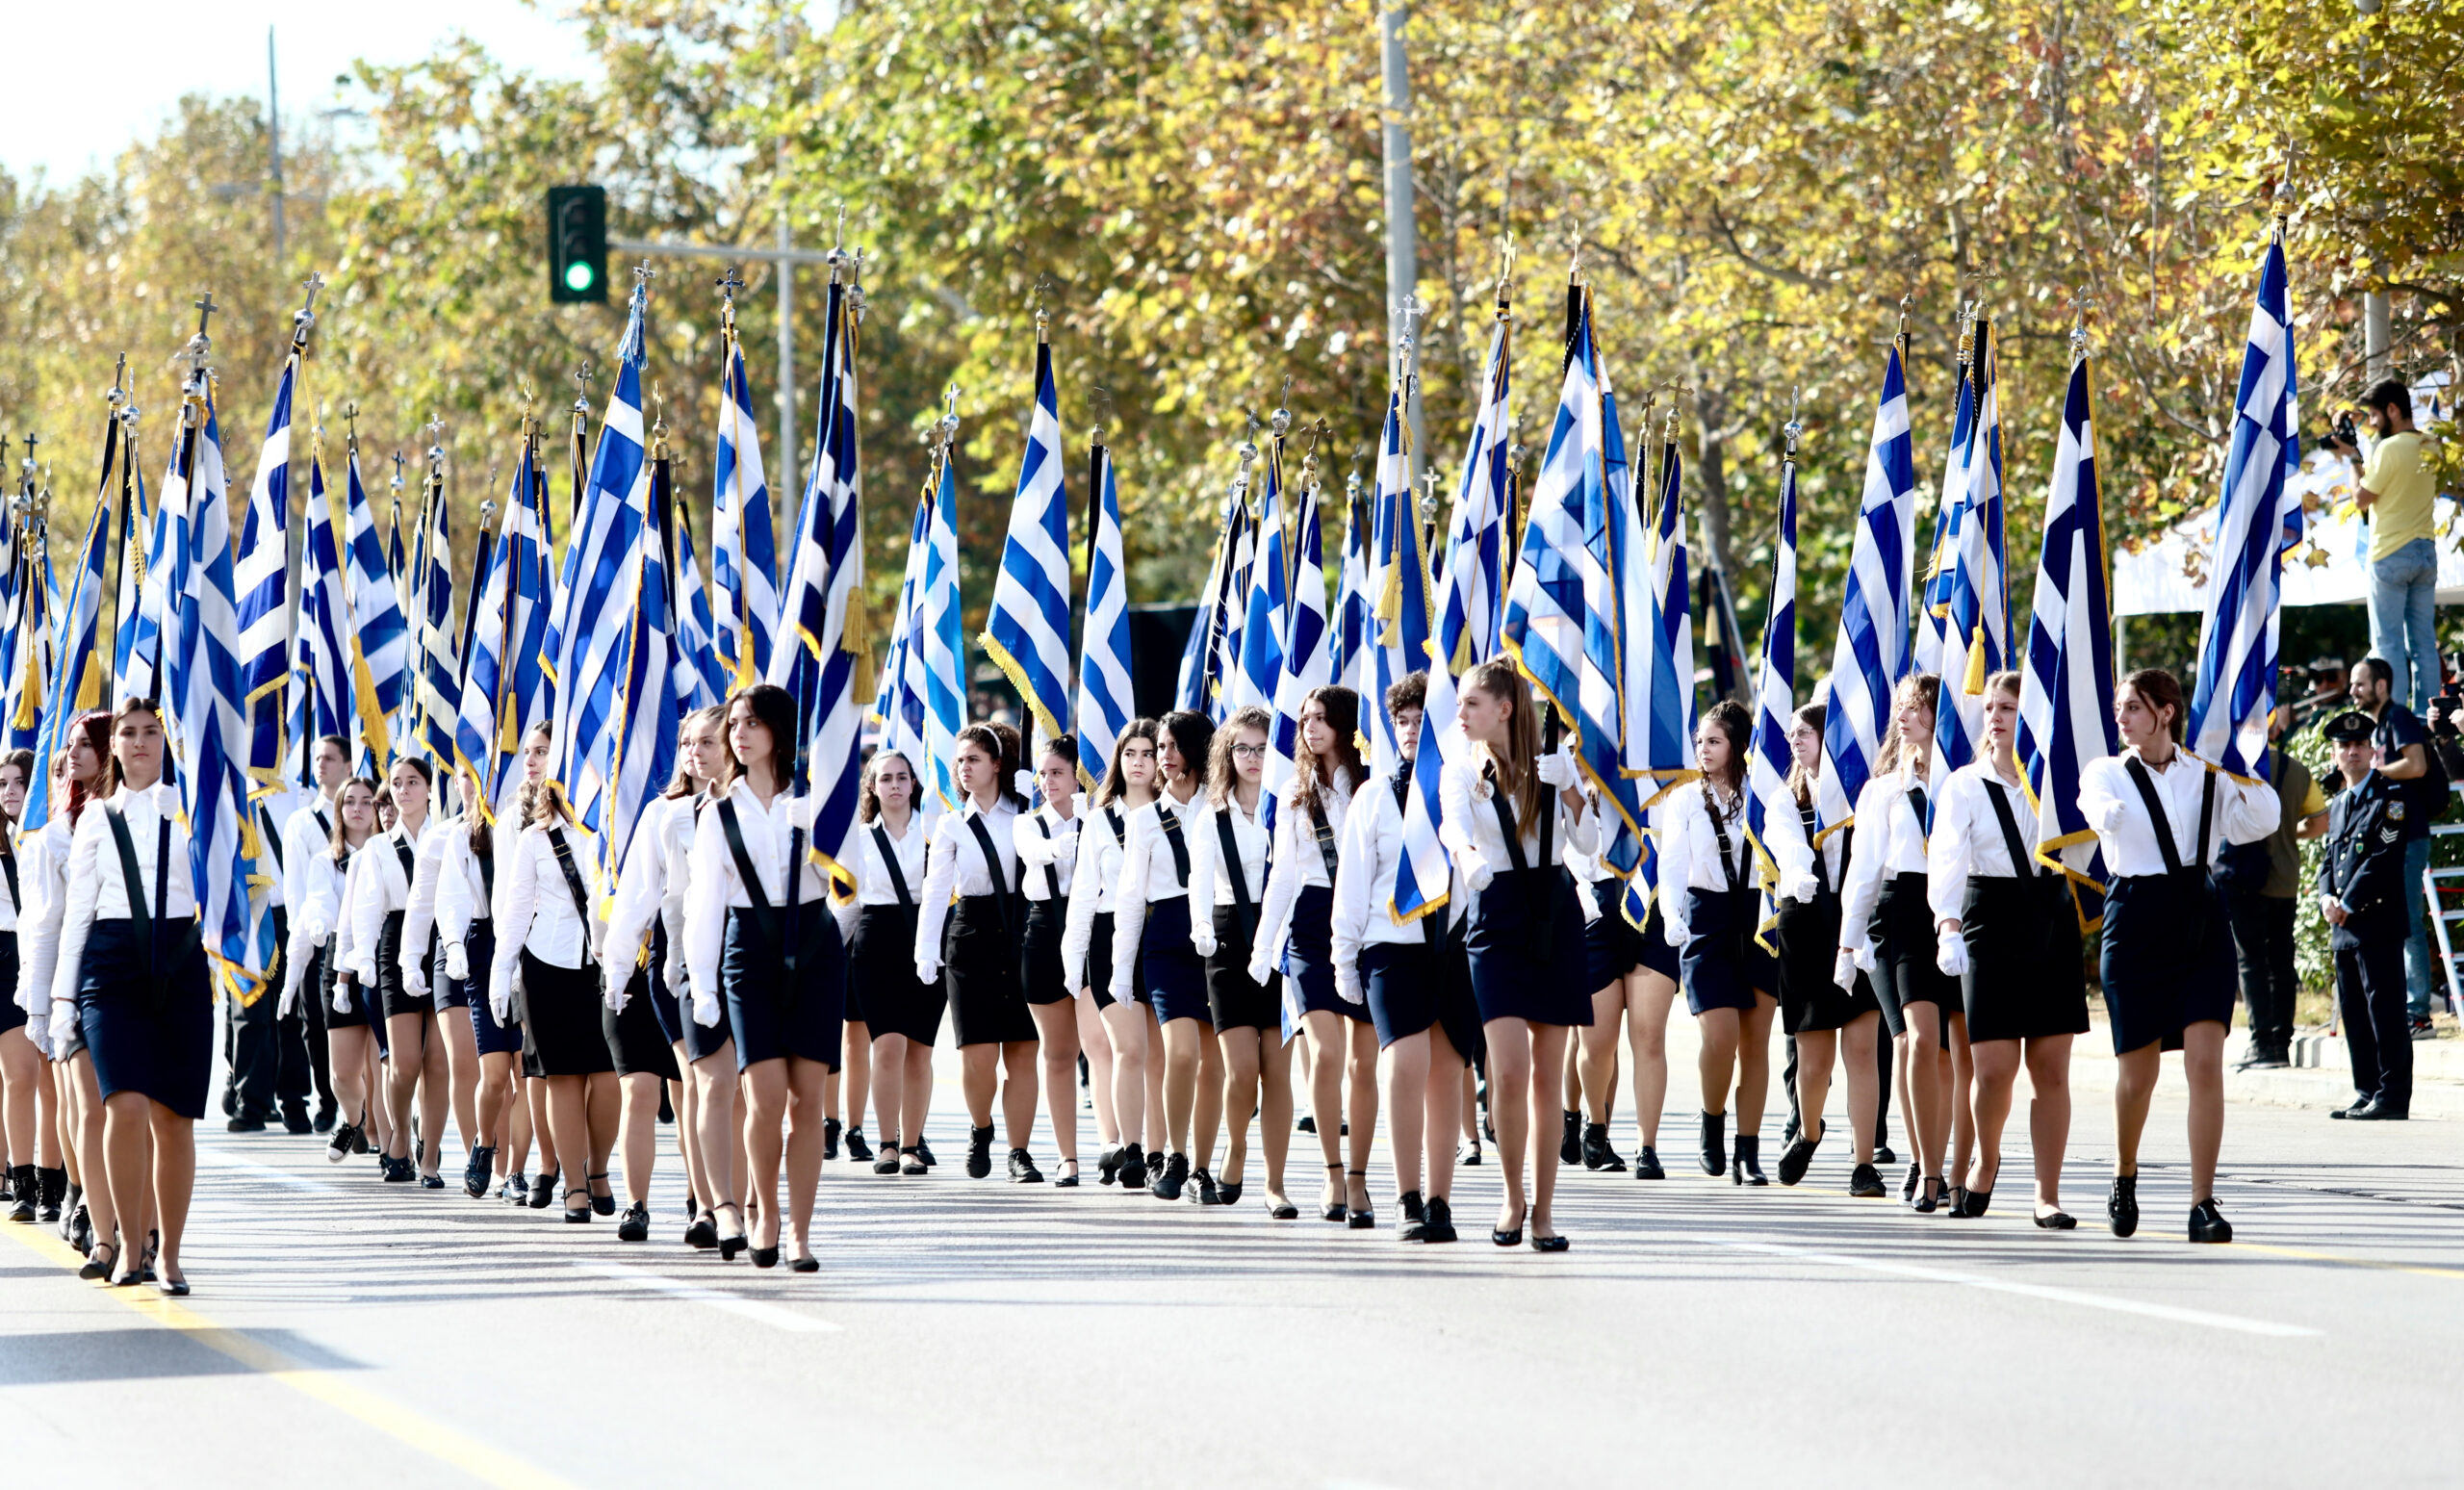 Το πρόγραμμα εορτασμού της εθνικής επετείου στη Θεσσαλονίκη- Κυκλοφοριακές ρυθμίσεις από σήμερα ενόψει της παρέλασης